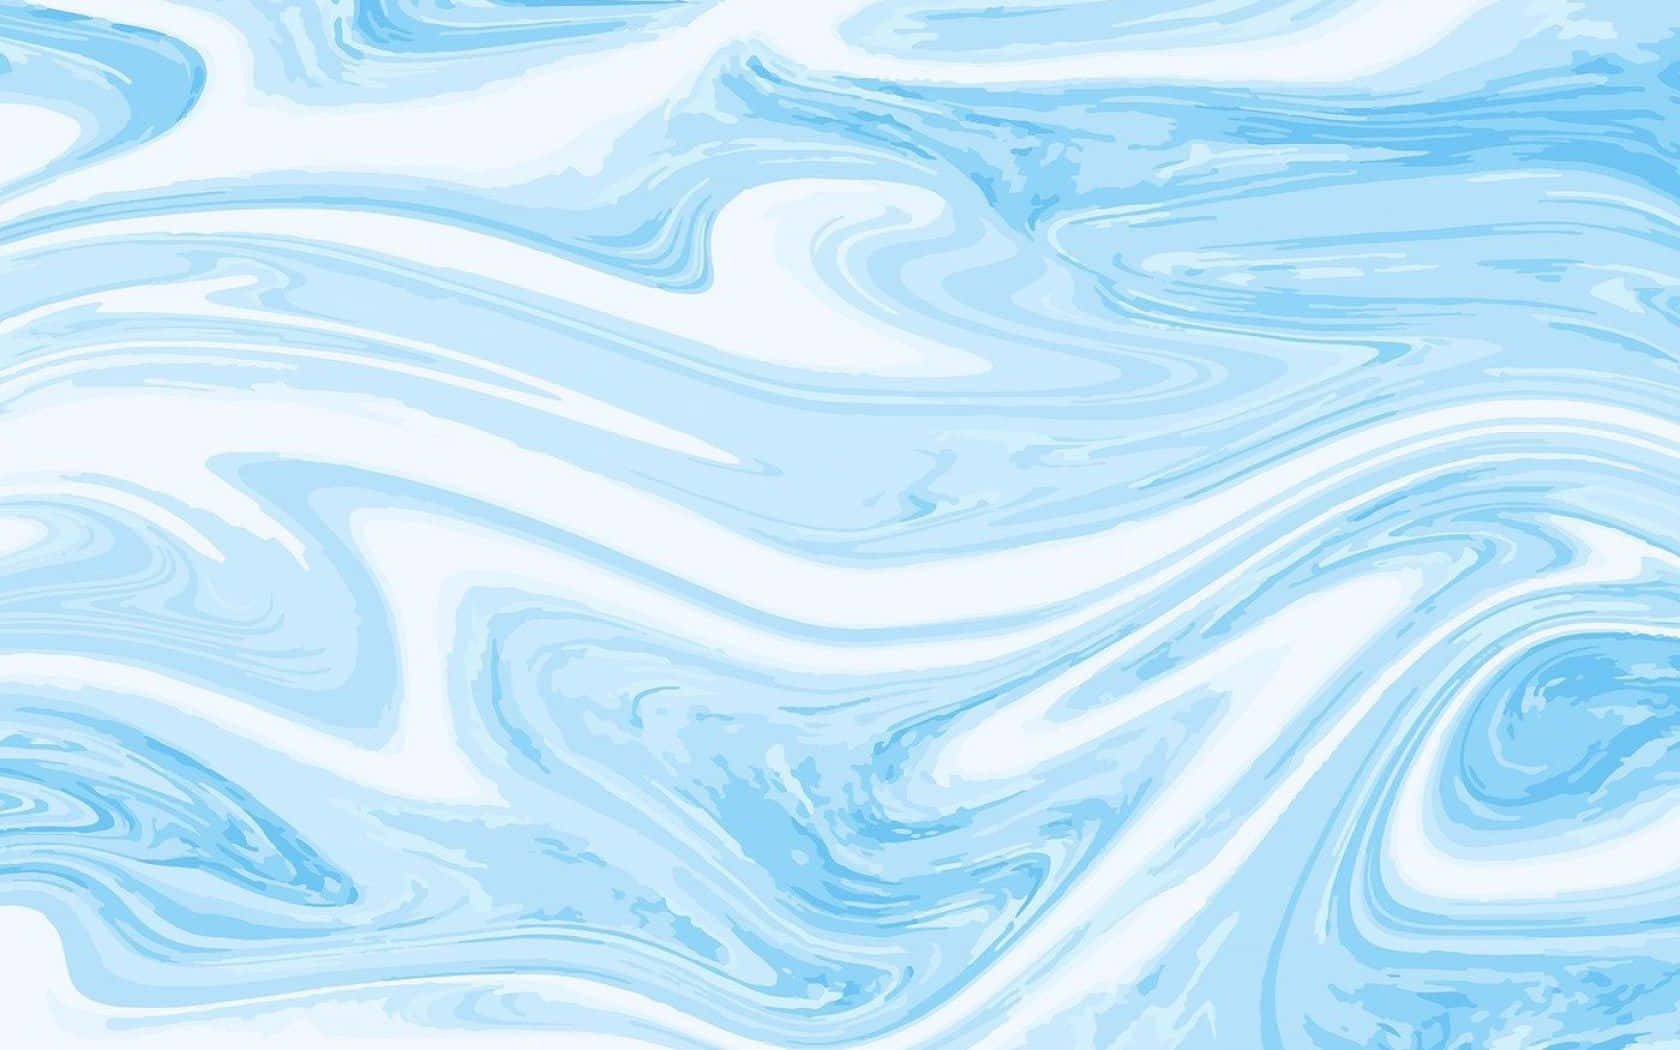 Fondode Pantalla Abstracto De Mármol En Tonos Azules Claros. Fondo de pantalla